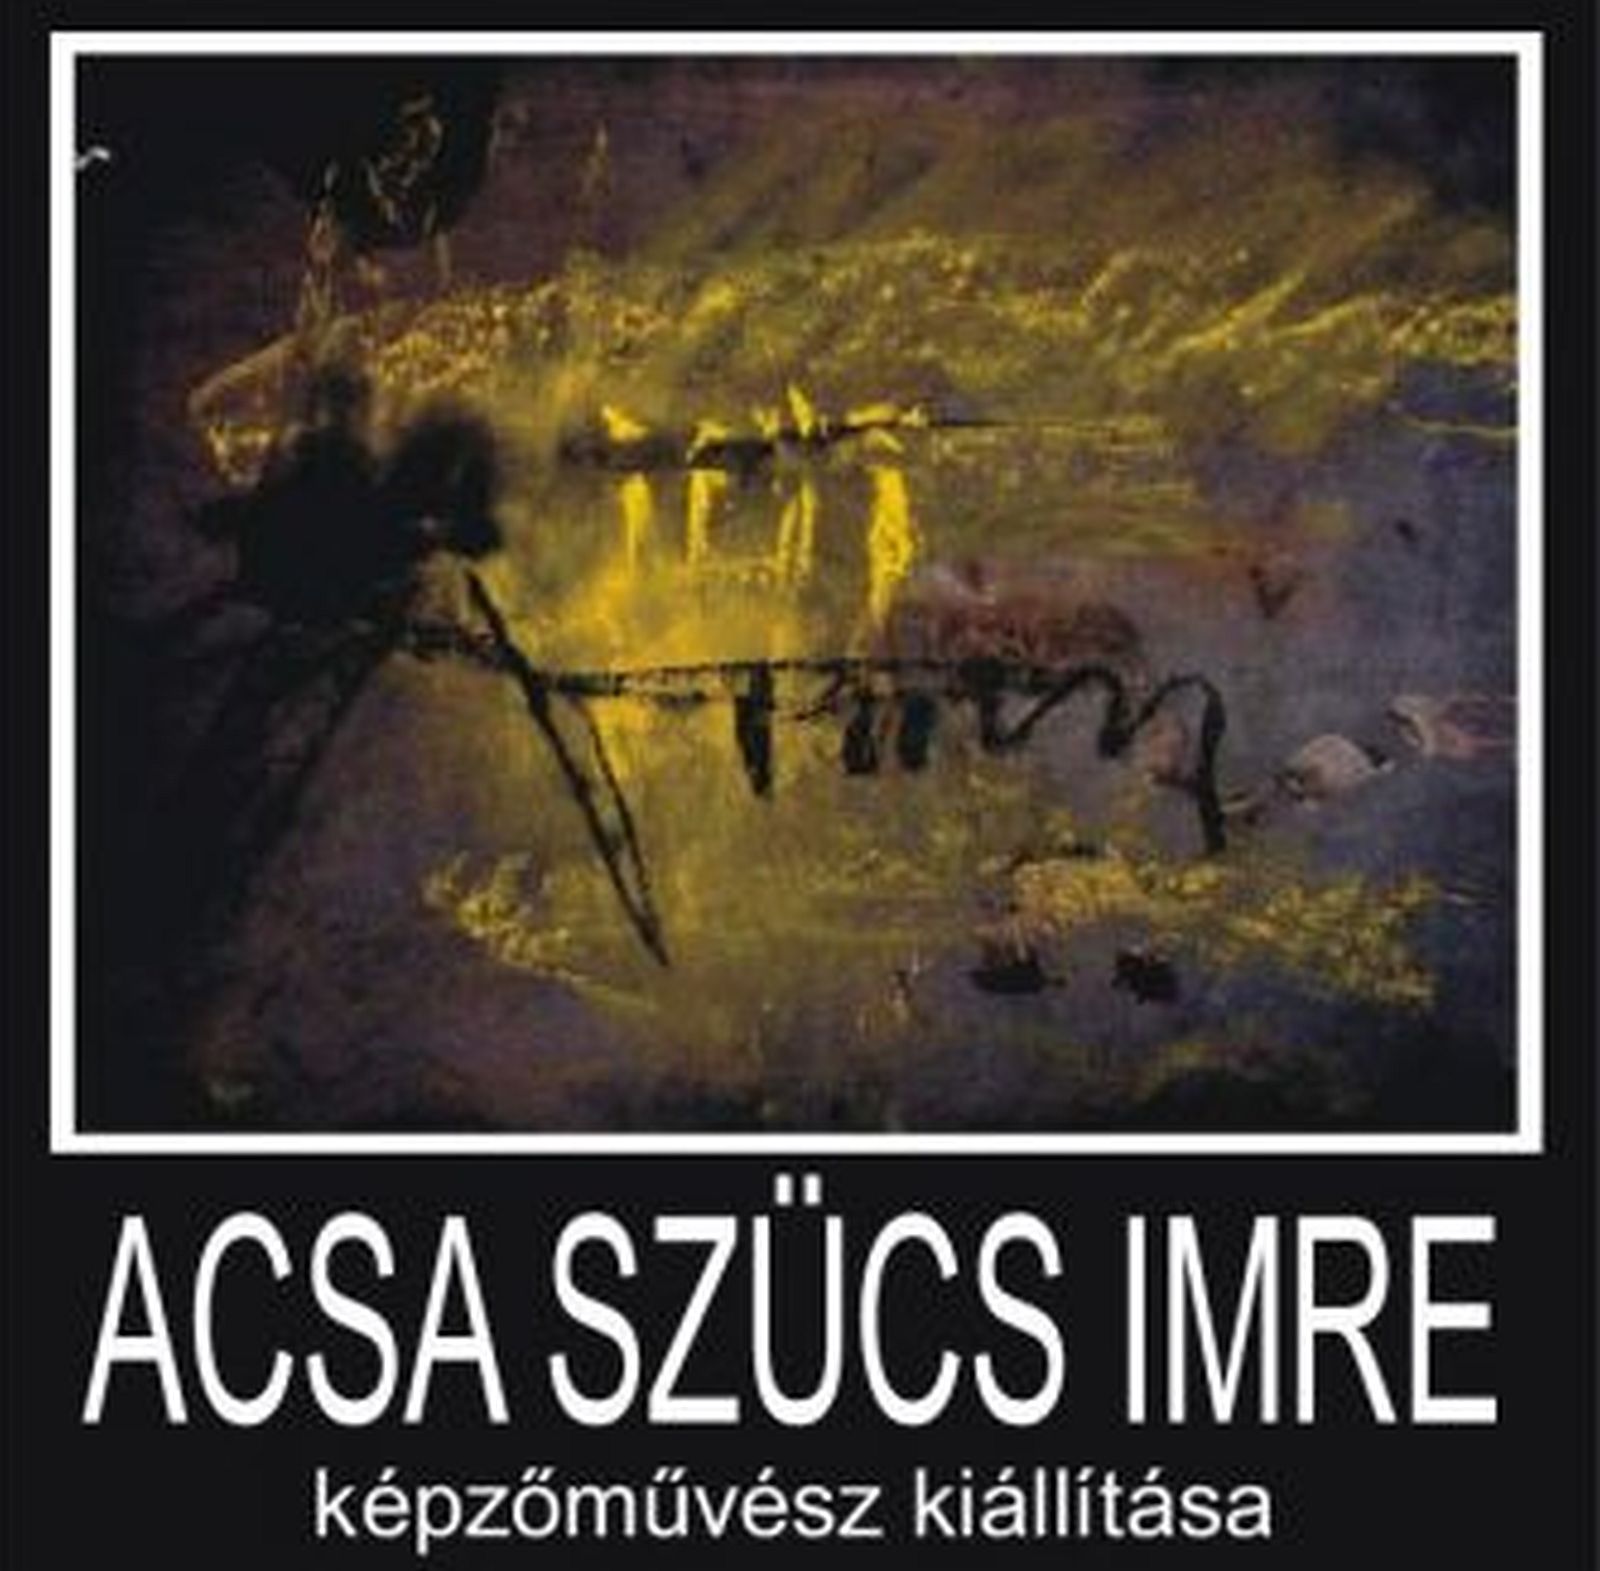 Acsa Szűcs Imre kiállításának megnyitója a Magyar Kultúra Napján